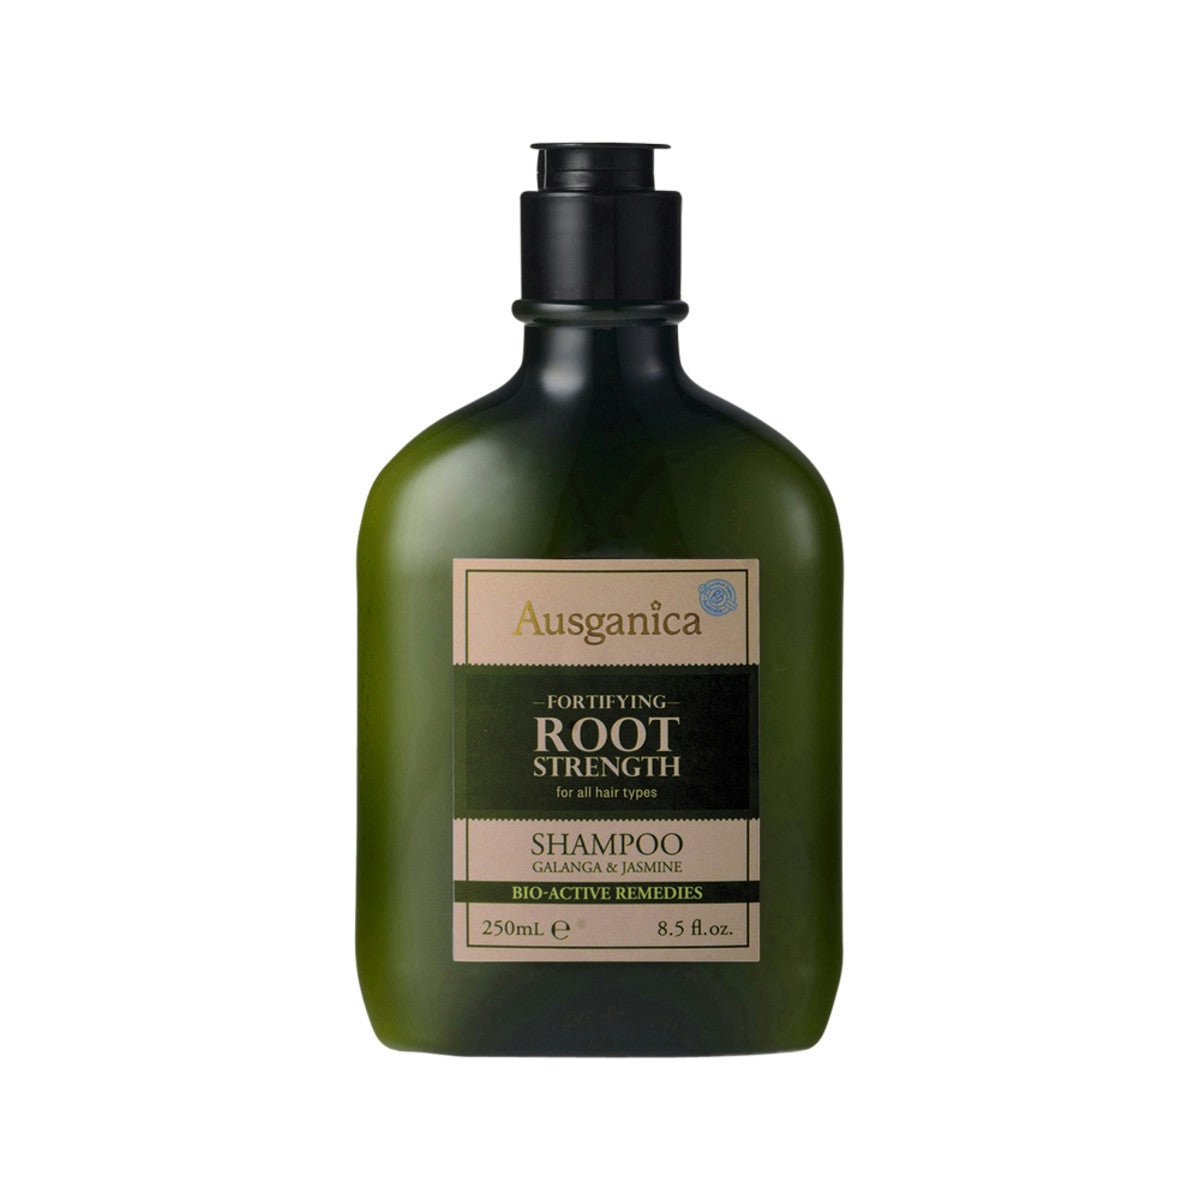 Ausganica Fortifying Root Strength Shampoo Galanga & Jasmine 250ml